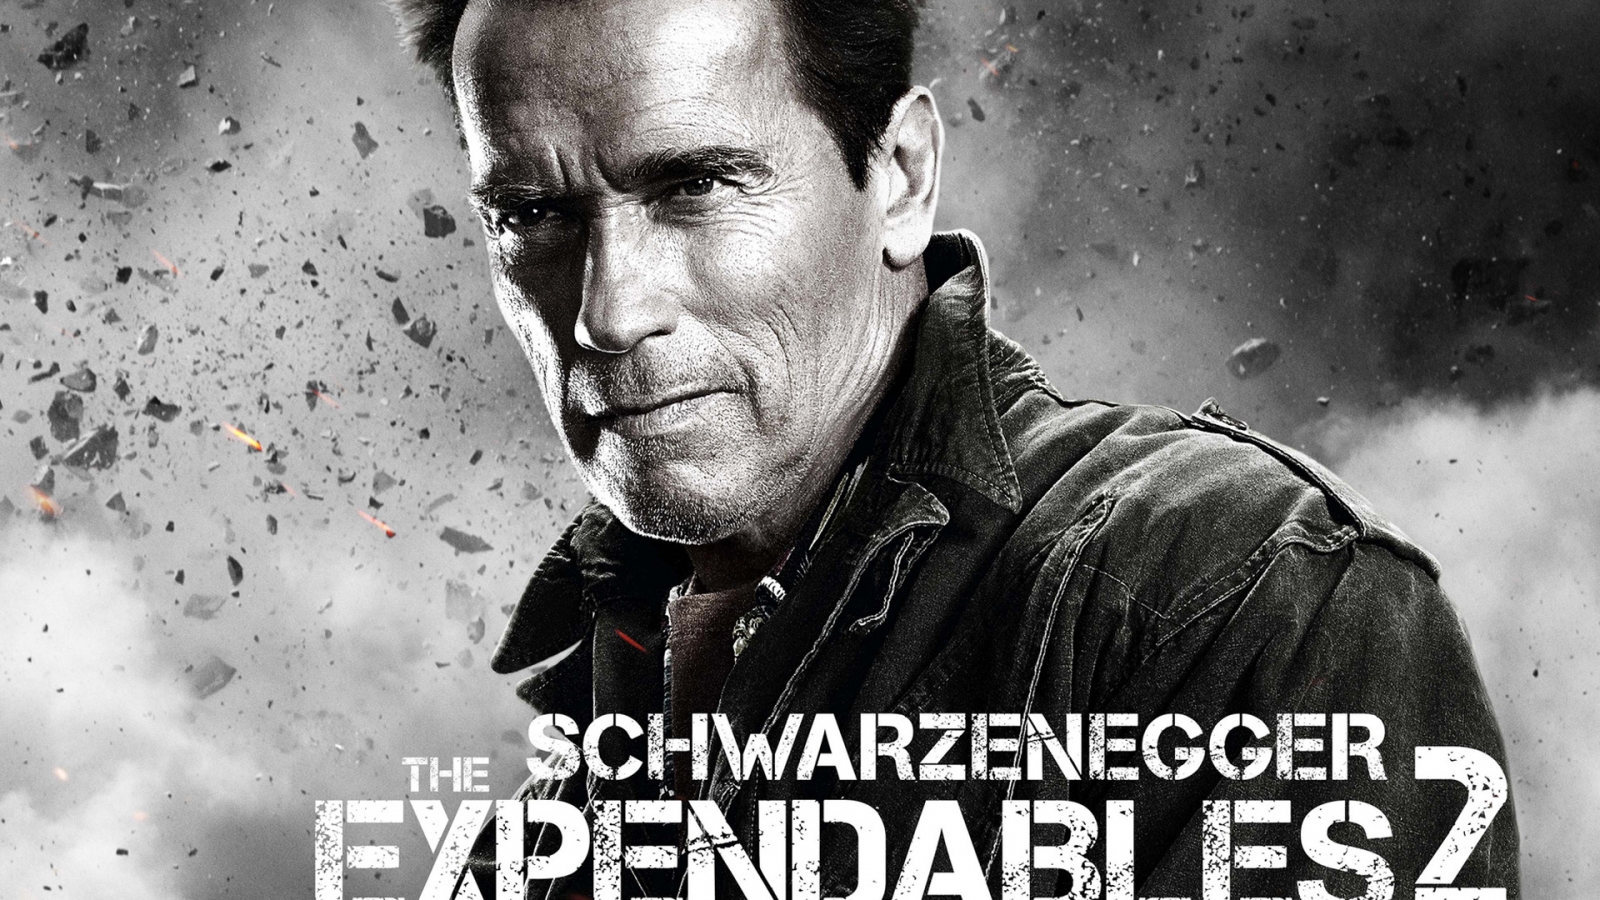 Arnold Schwarzenegger Expendables 2 for 1600 x 900 HDTV resolution